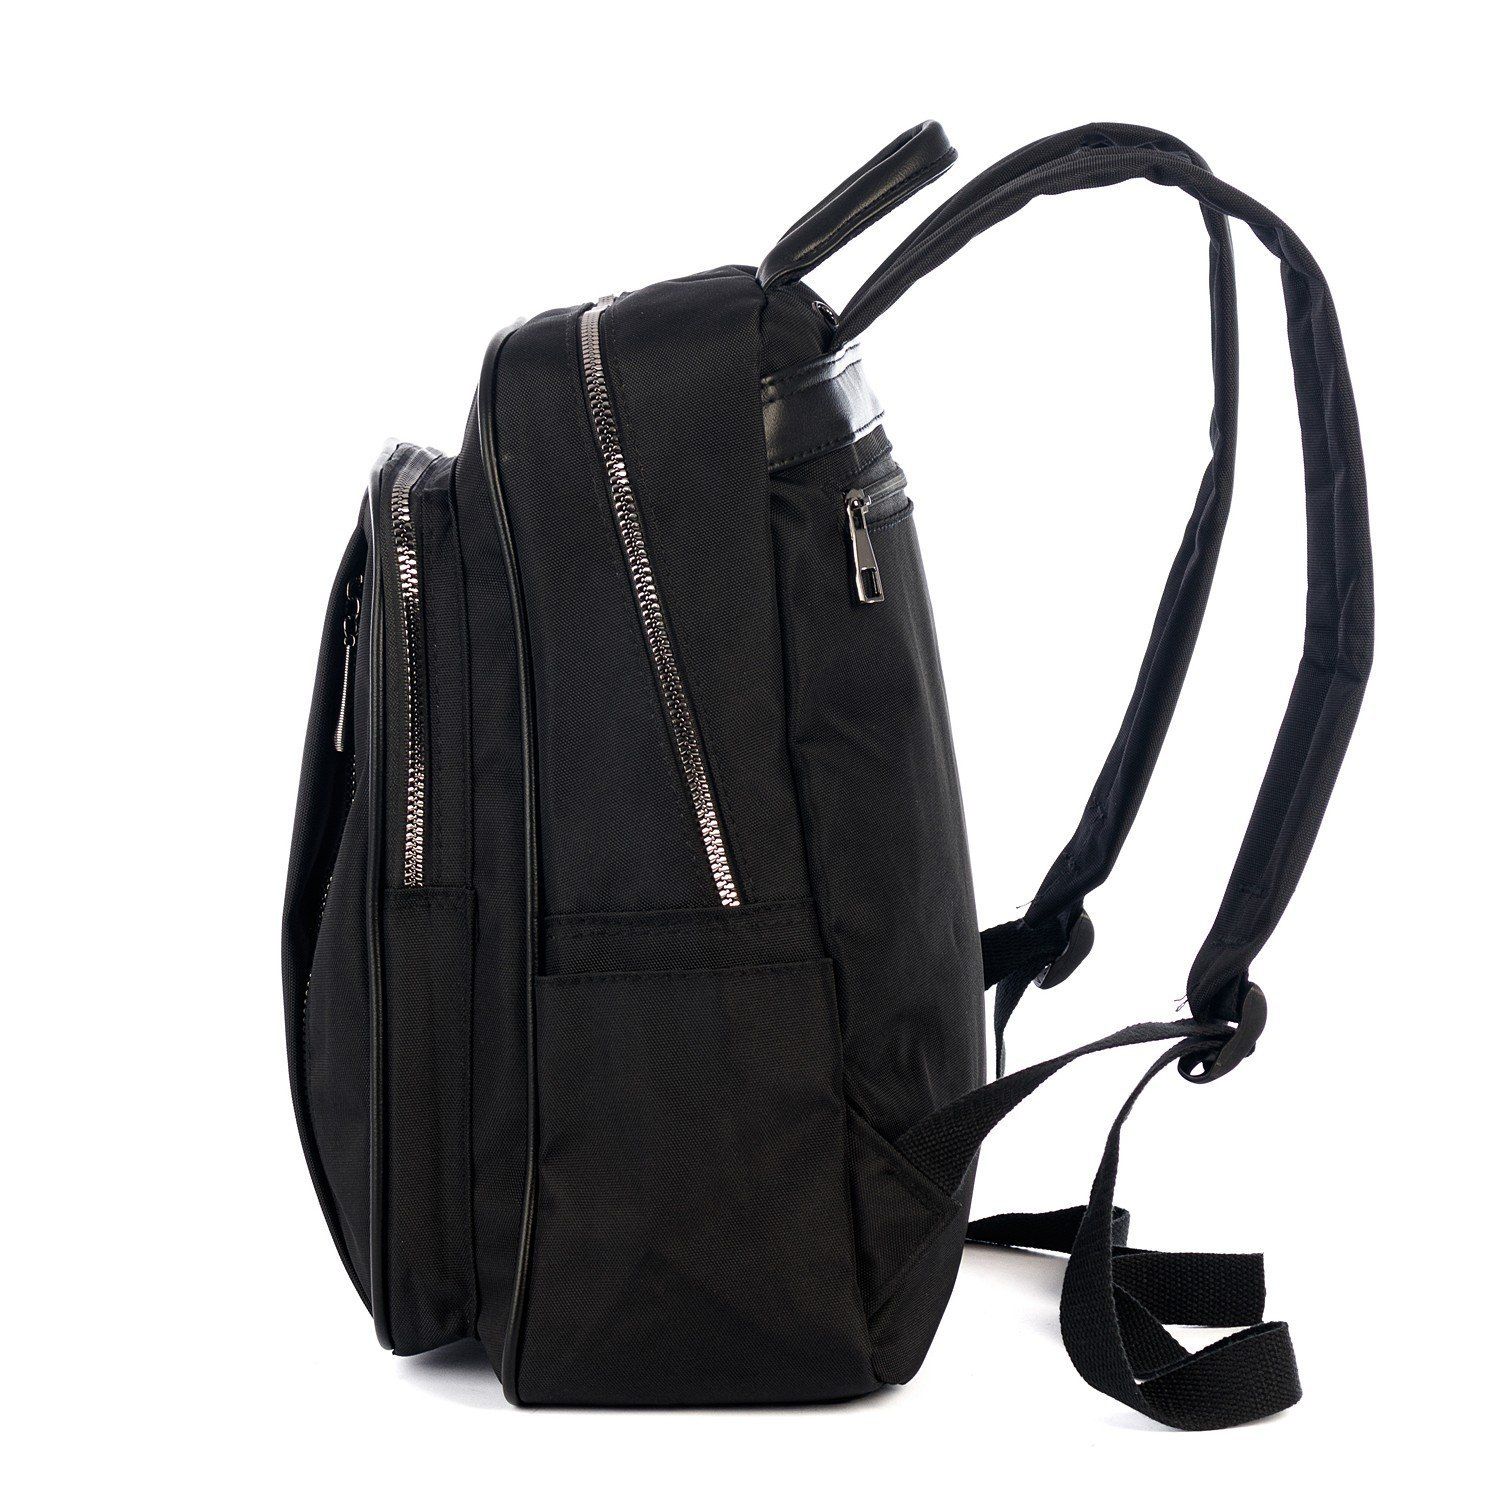 Рюкзак женский / мужской городской, черный однотонный, с узкими лямками и USB, объем 20 л